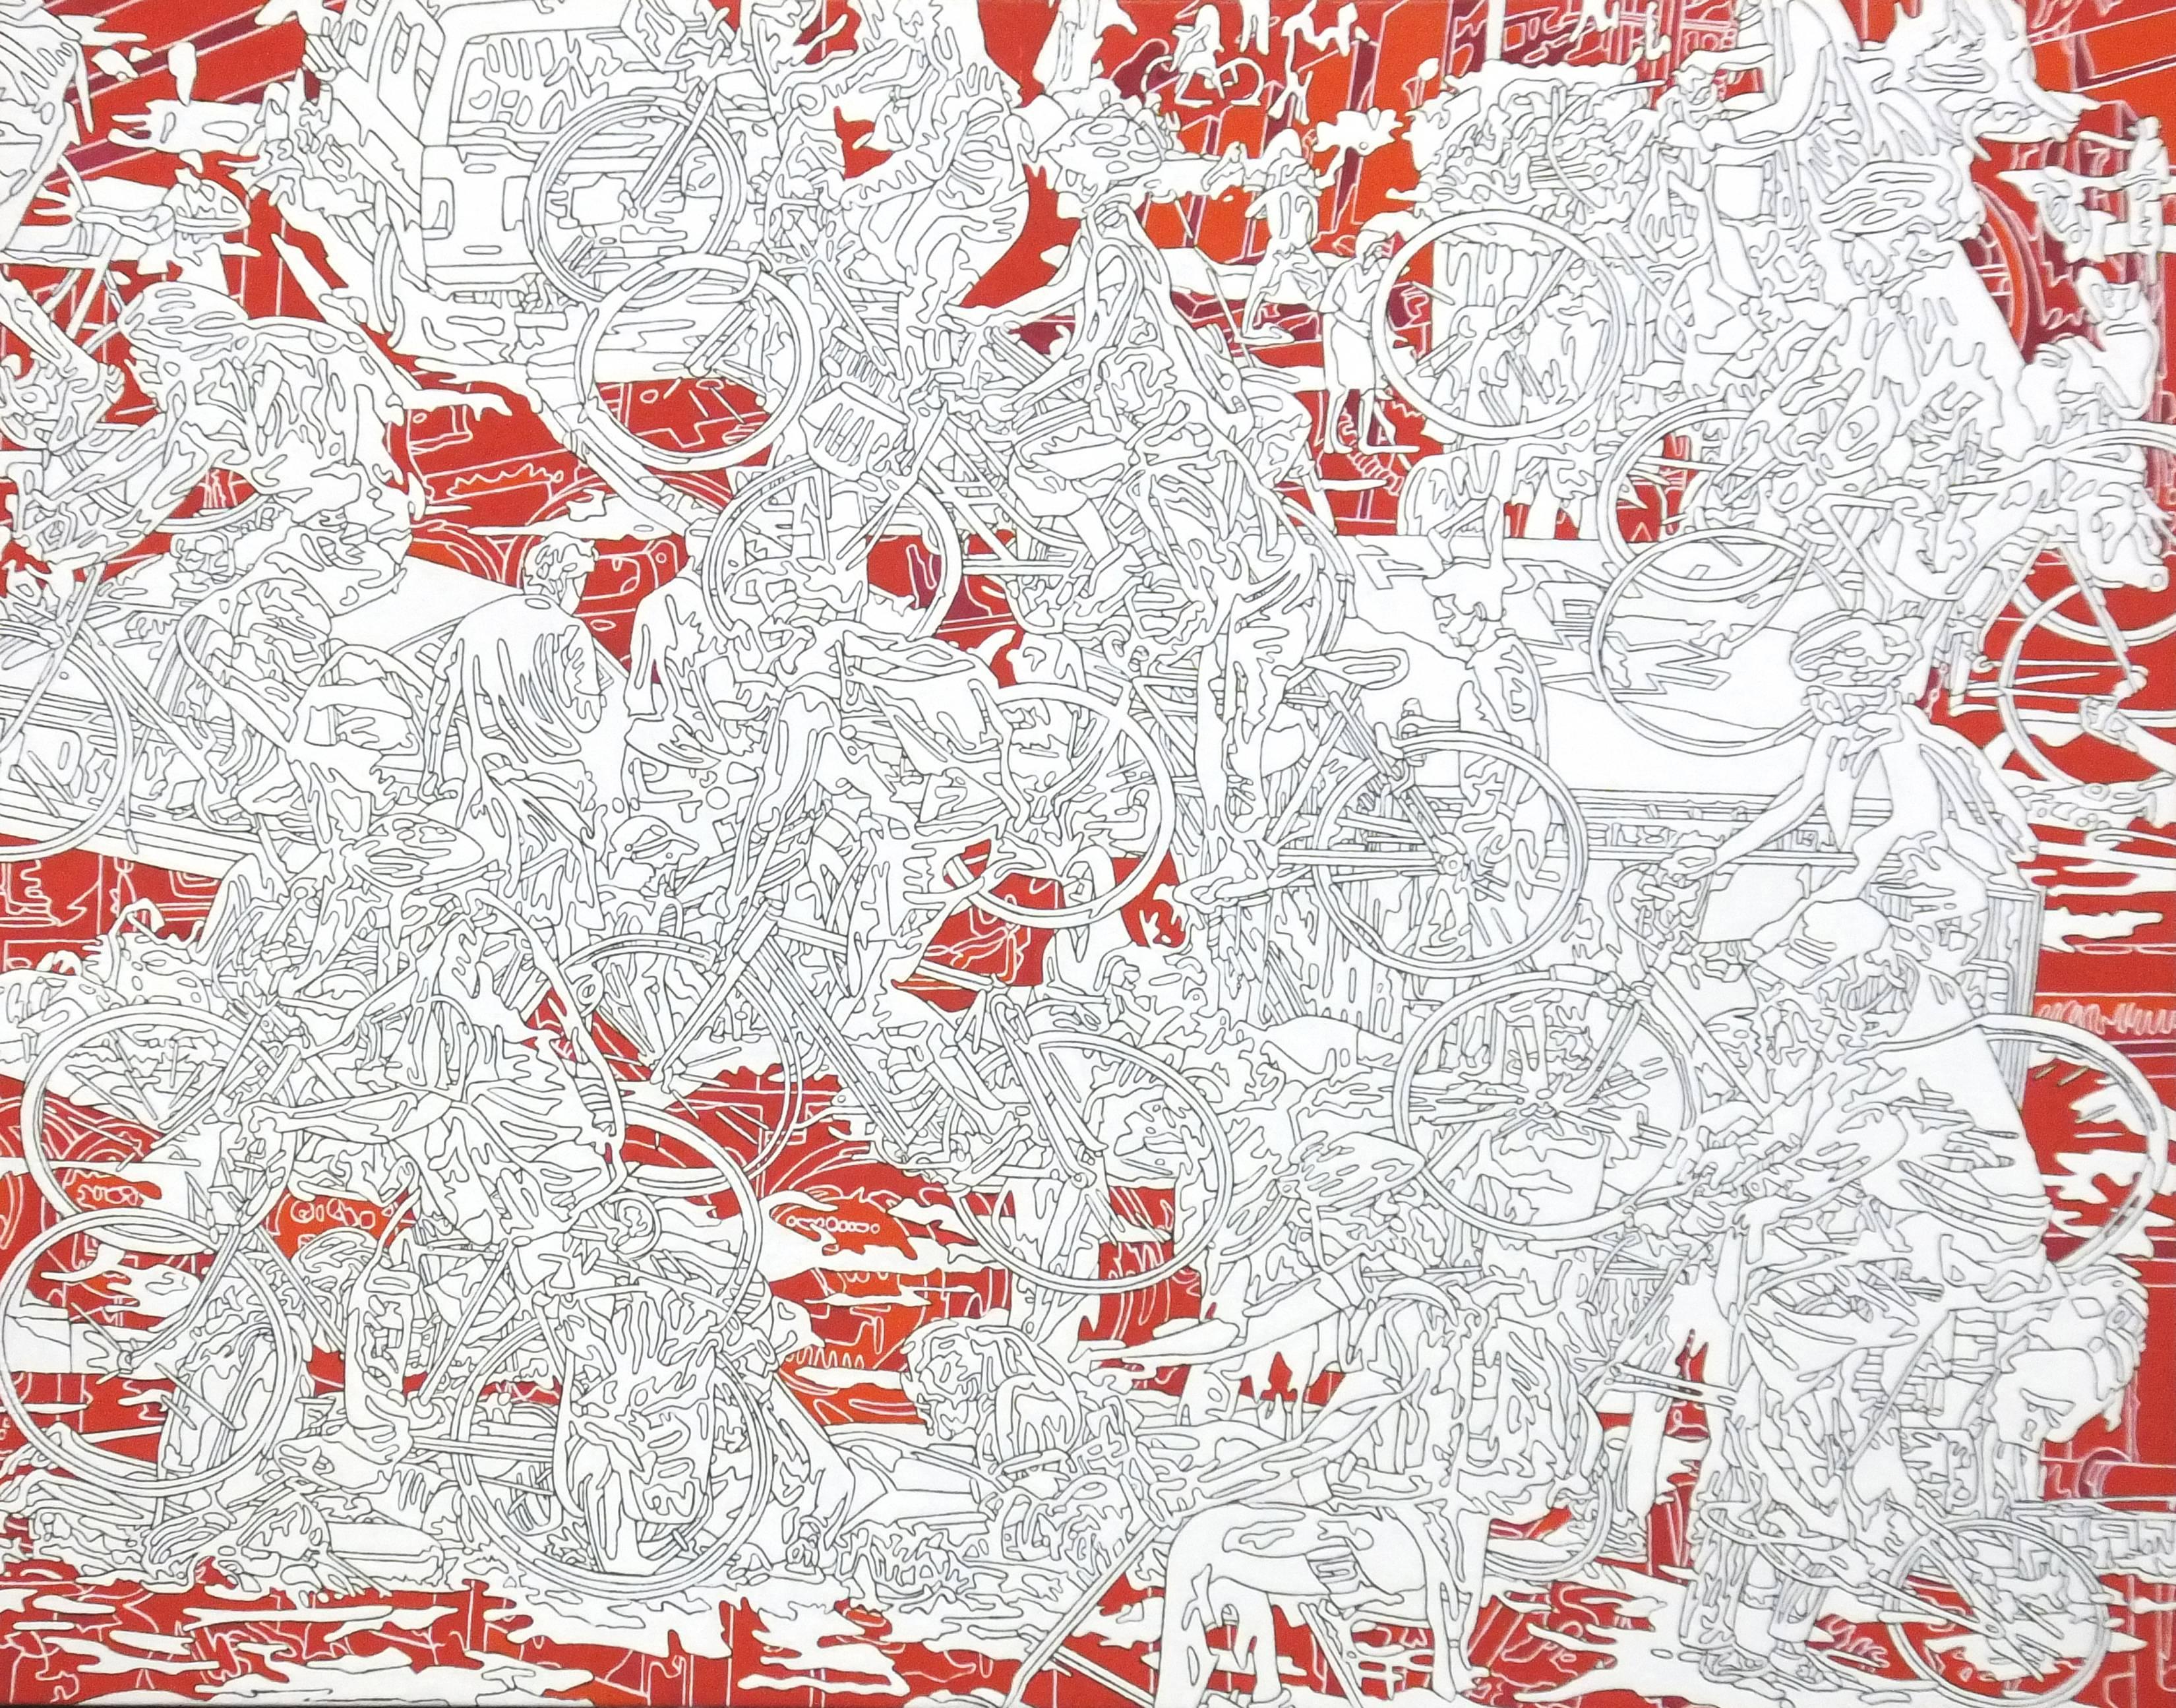 Kentaro Hiramatsu Figurative Painting – Park-r-1, rot-weiße Linienzeichnung, belebte Stadtszene, abstrahierte Menschen